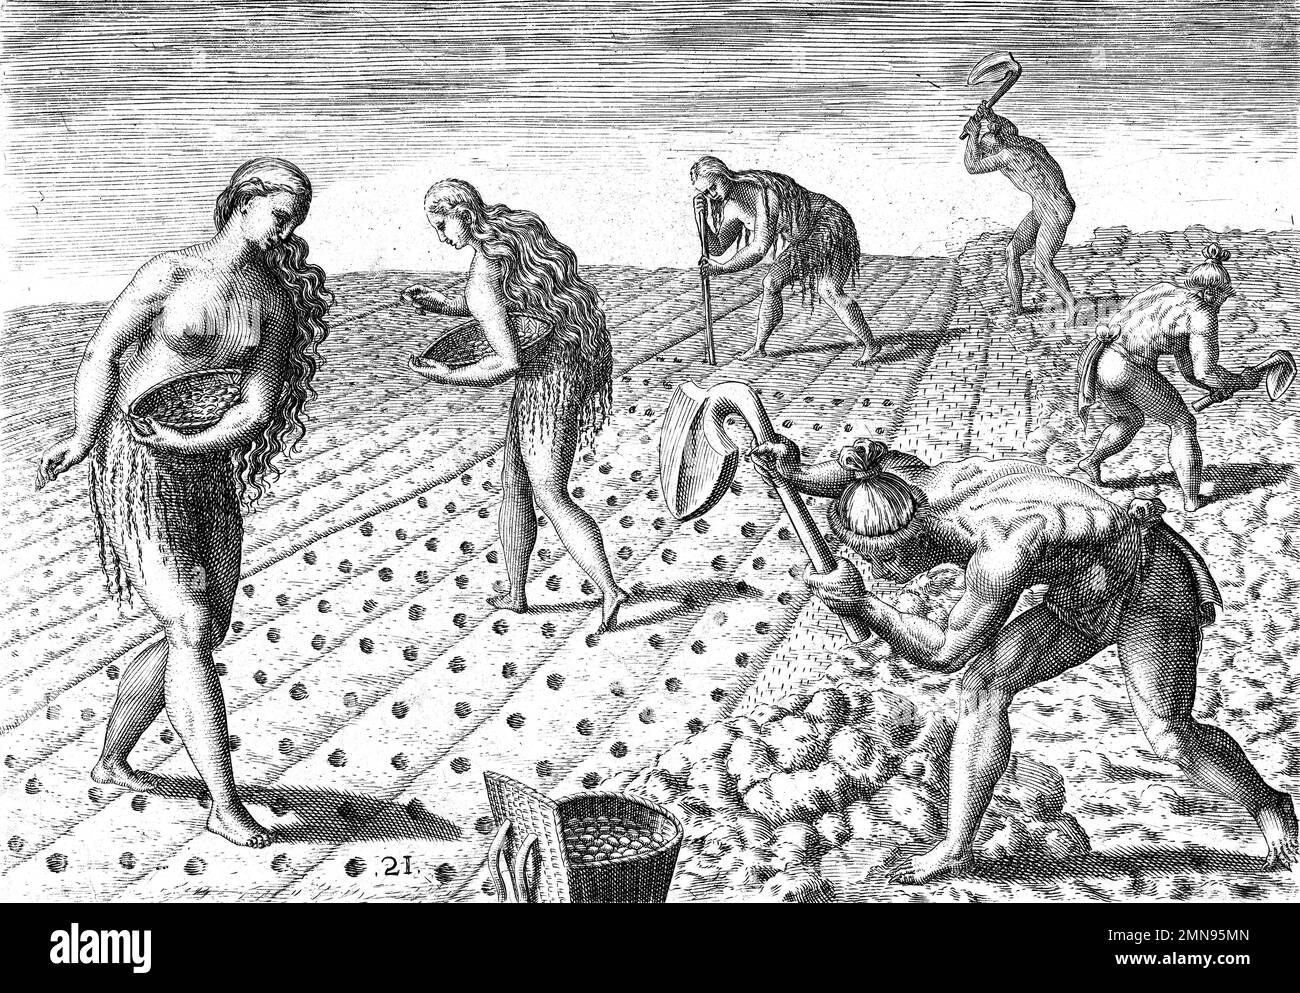 Theodor de Bry. Incisione di campi di semina e aratura nativi americani da parte dell'incisore olandese Theodor de Bry (Theodorus de Bry: 1528-1598), incisione / stampa letteraria 1591 Foto Stock